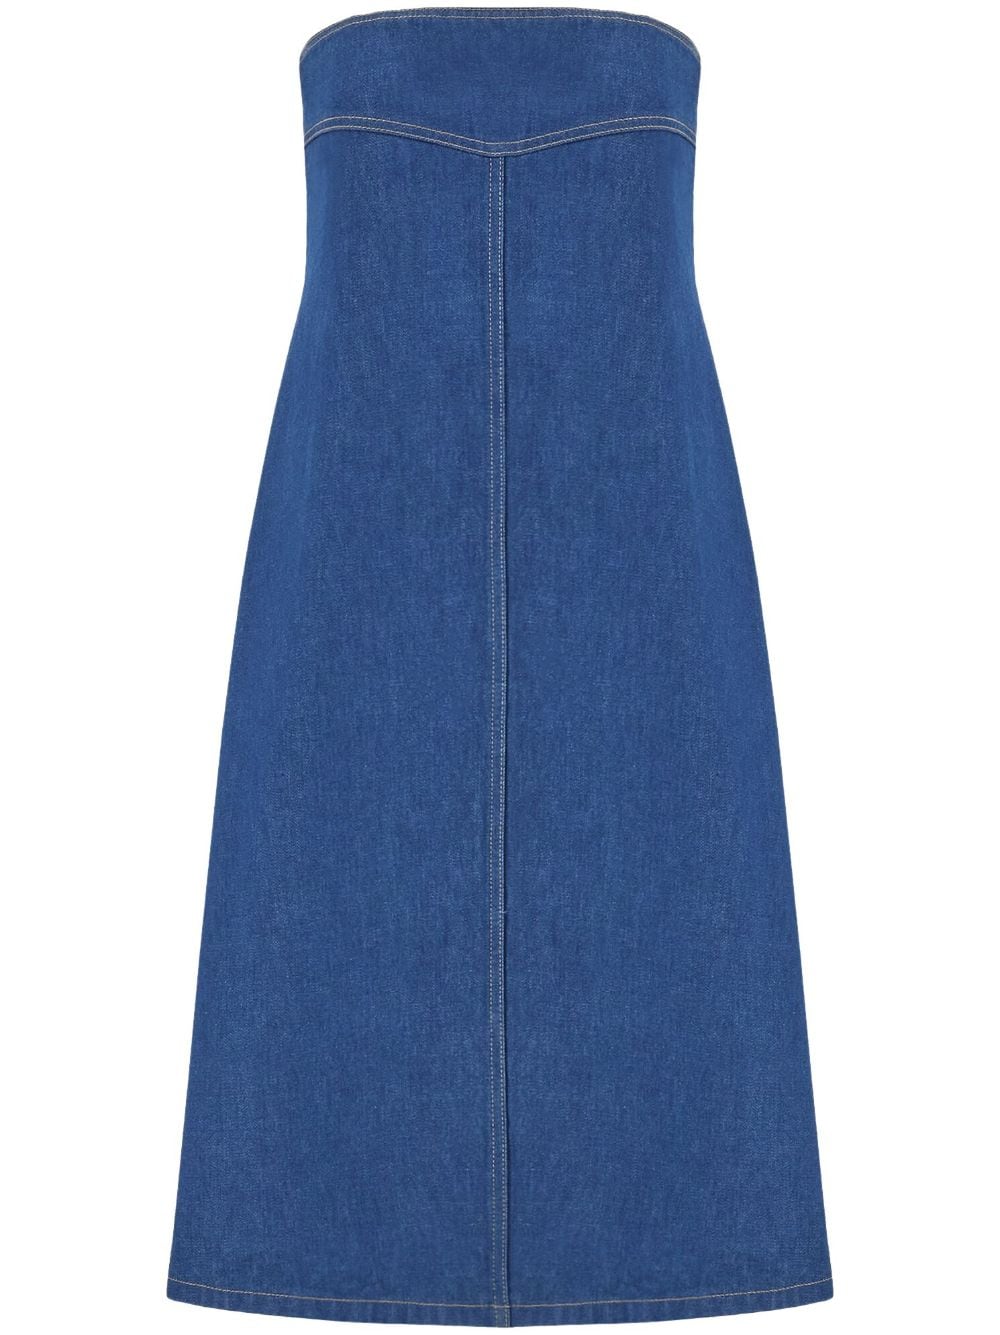 Ferragamo bustier-style neckline denim dress - Blue